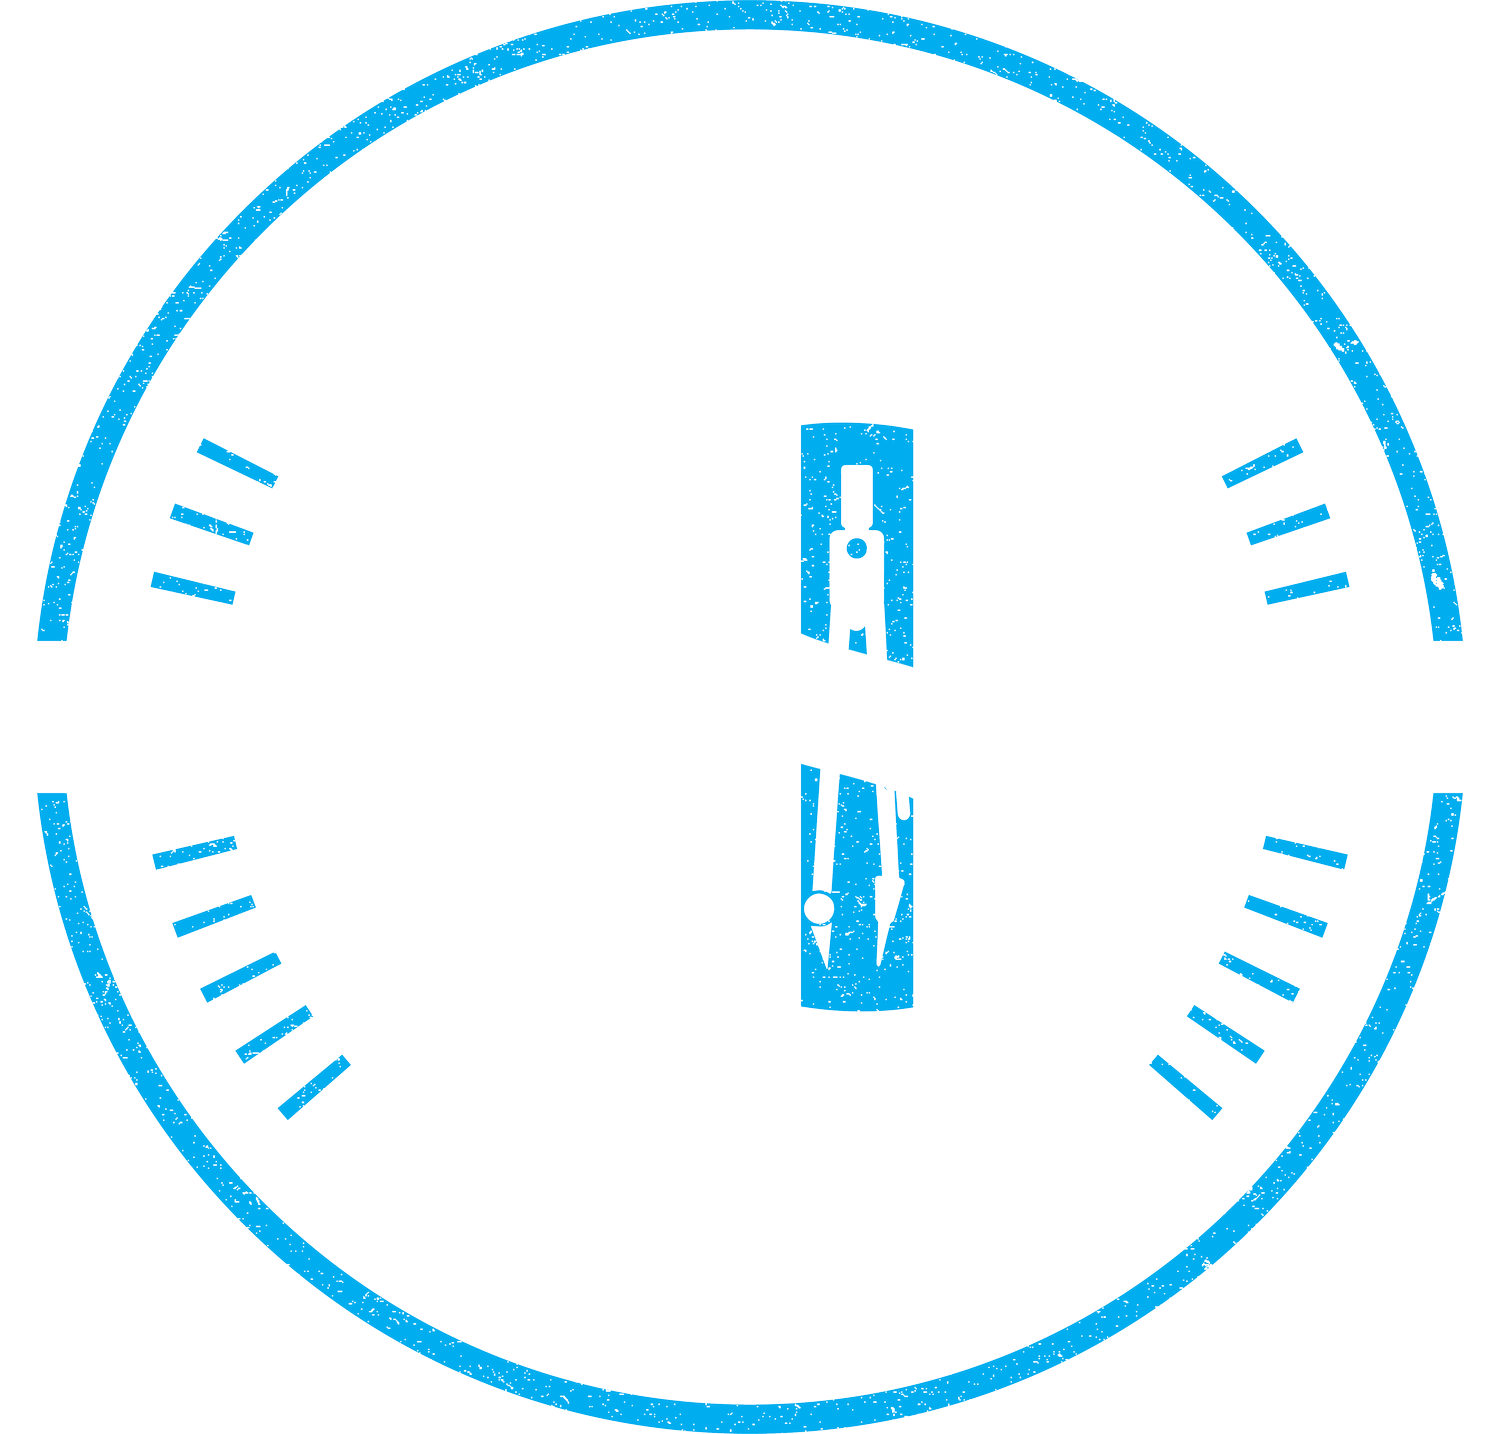 Impetus Studio